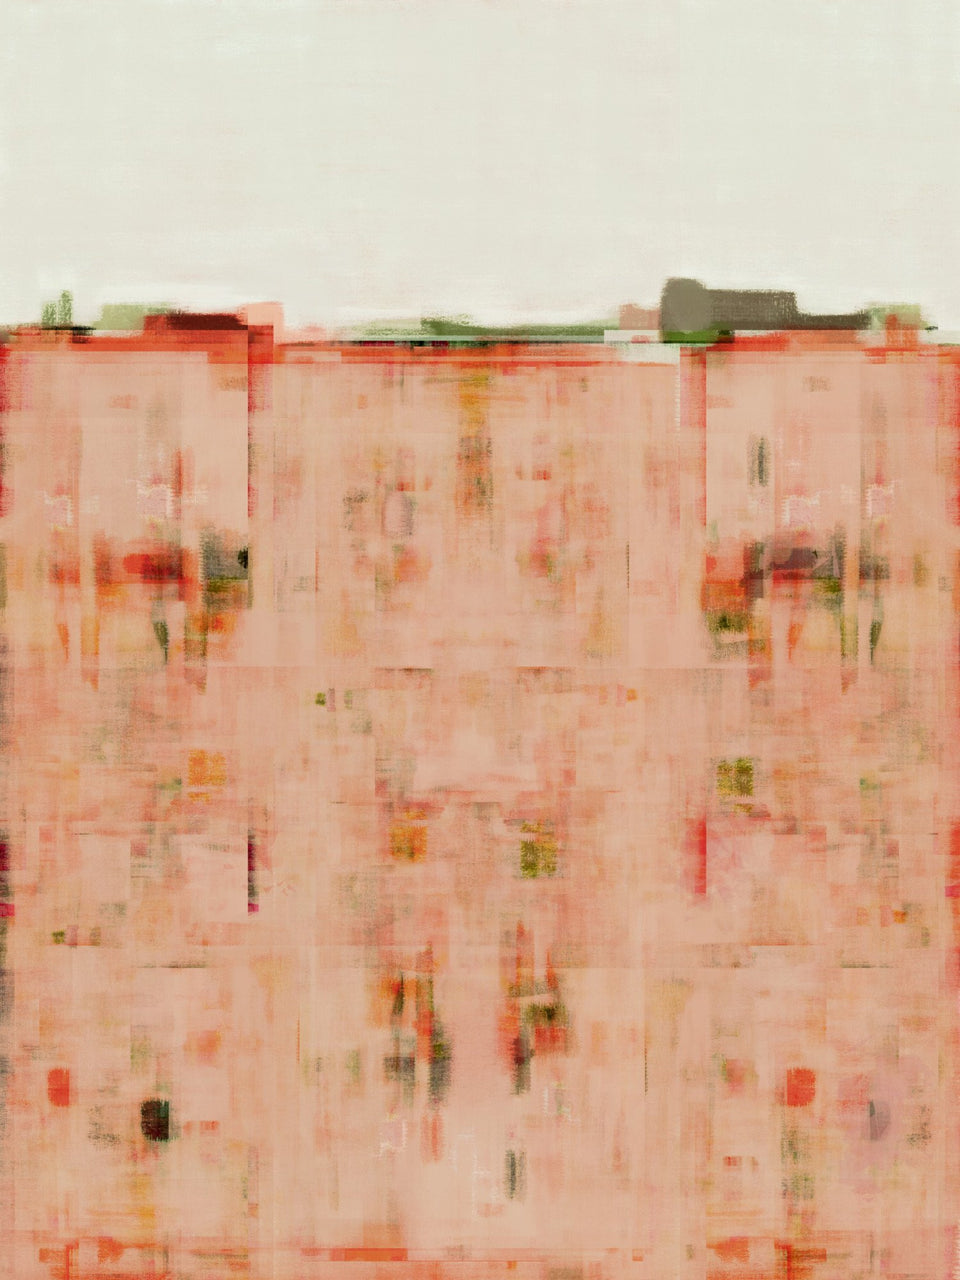  Peinture abstraite style ville paysage urbain - Tableau moderne  artiste peintre Octave Pixel  galerie TACT Art abstrait & contemporain